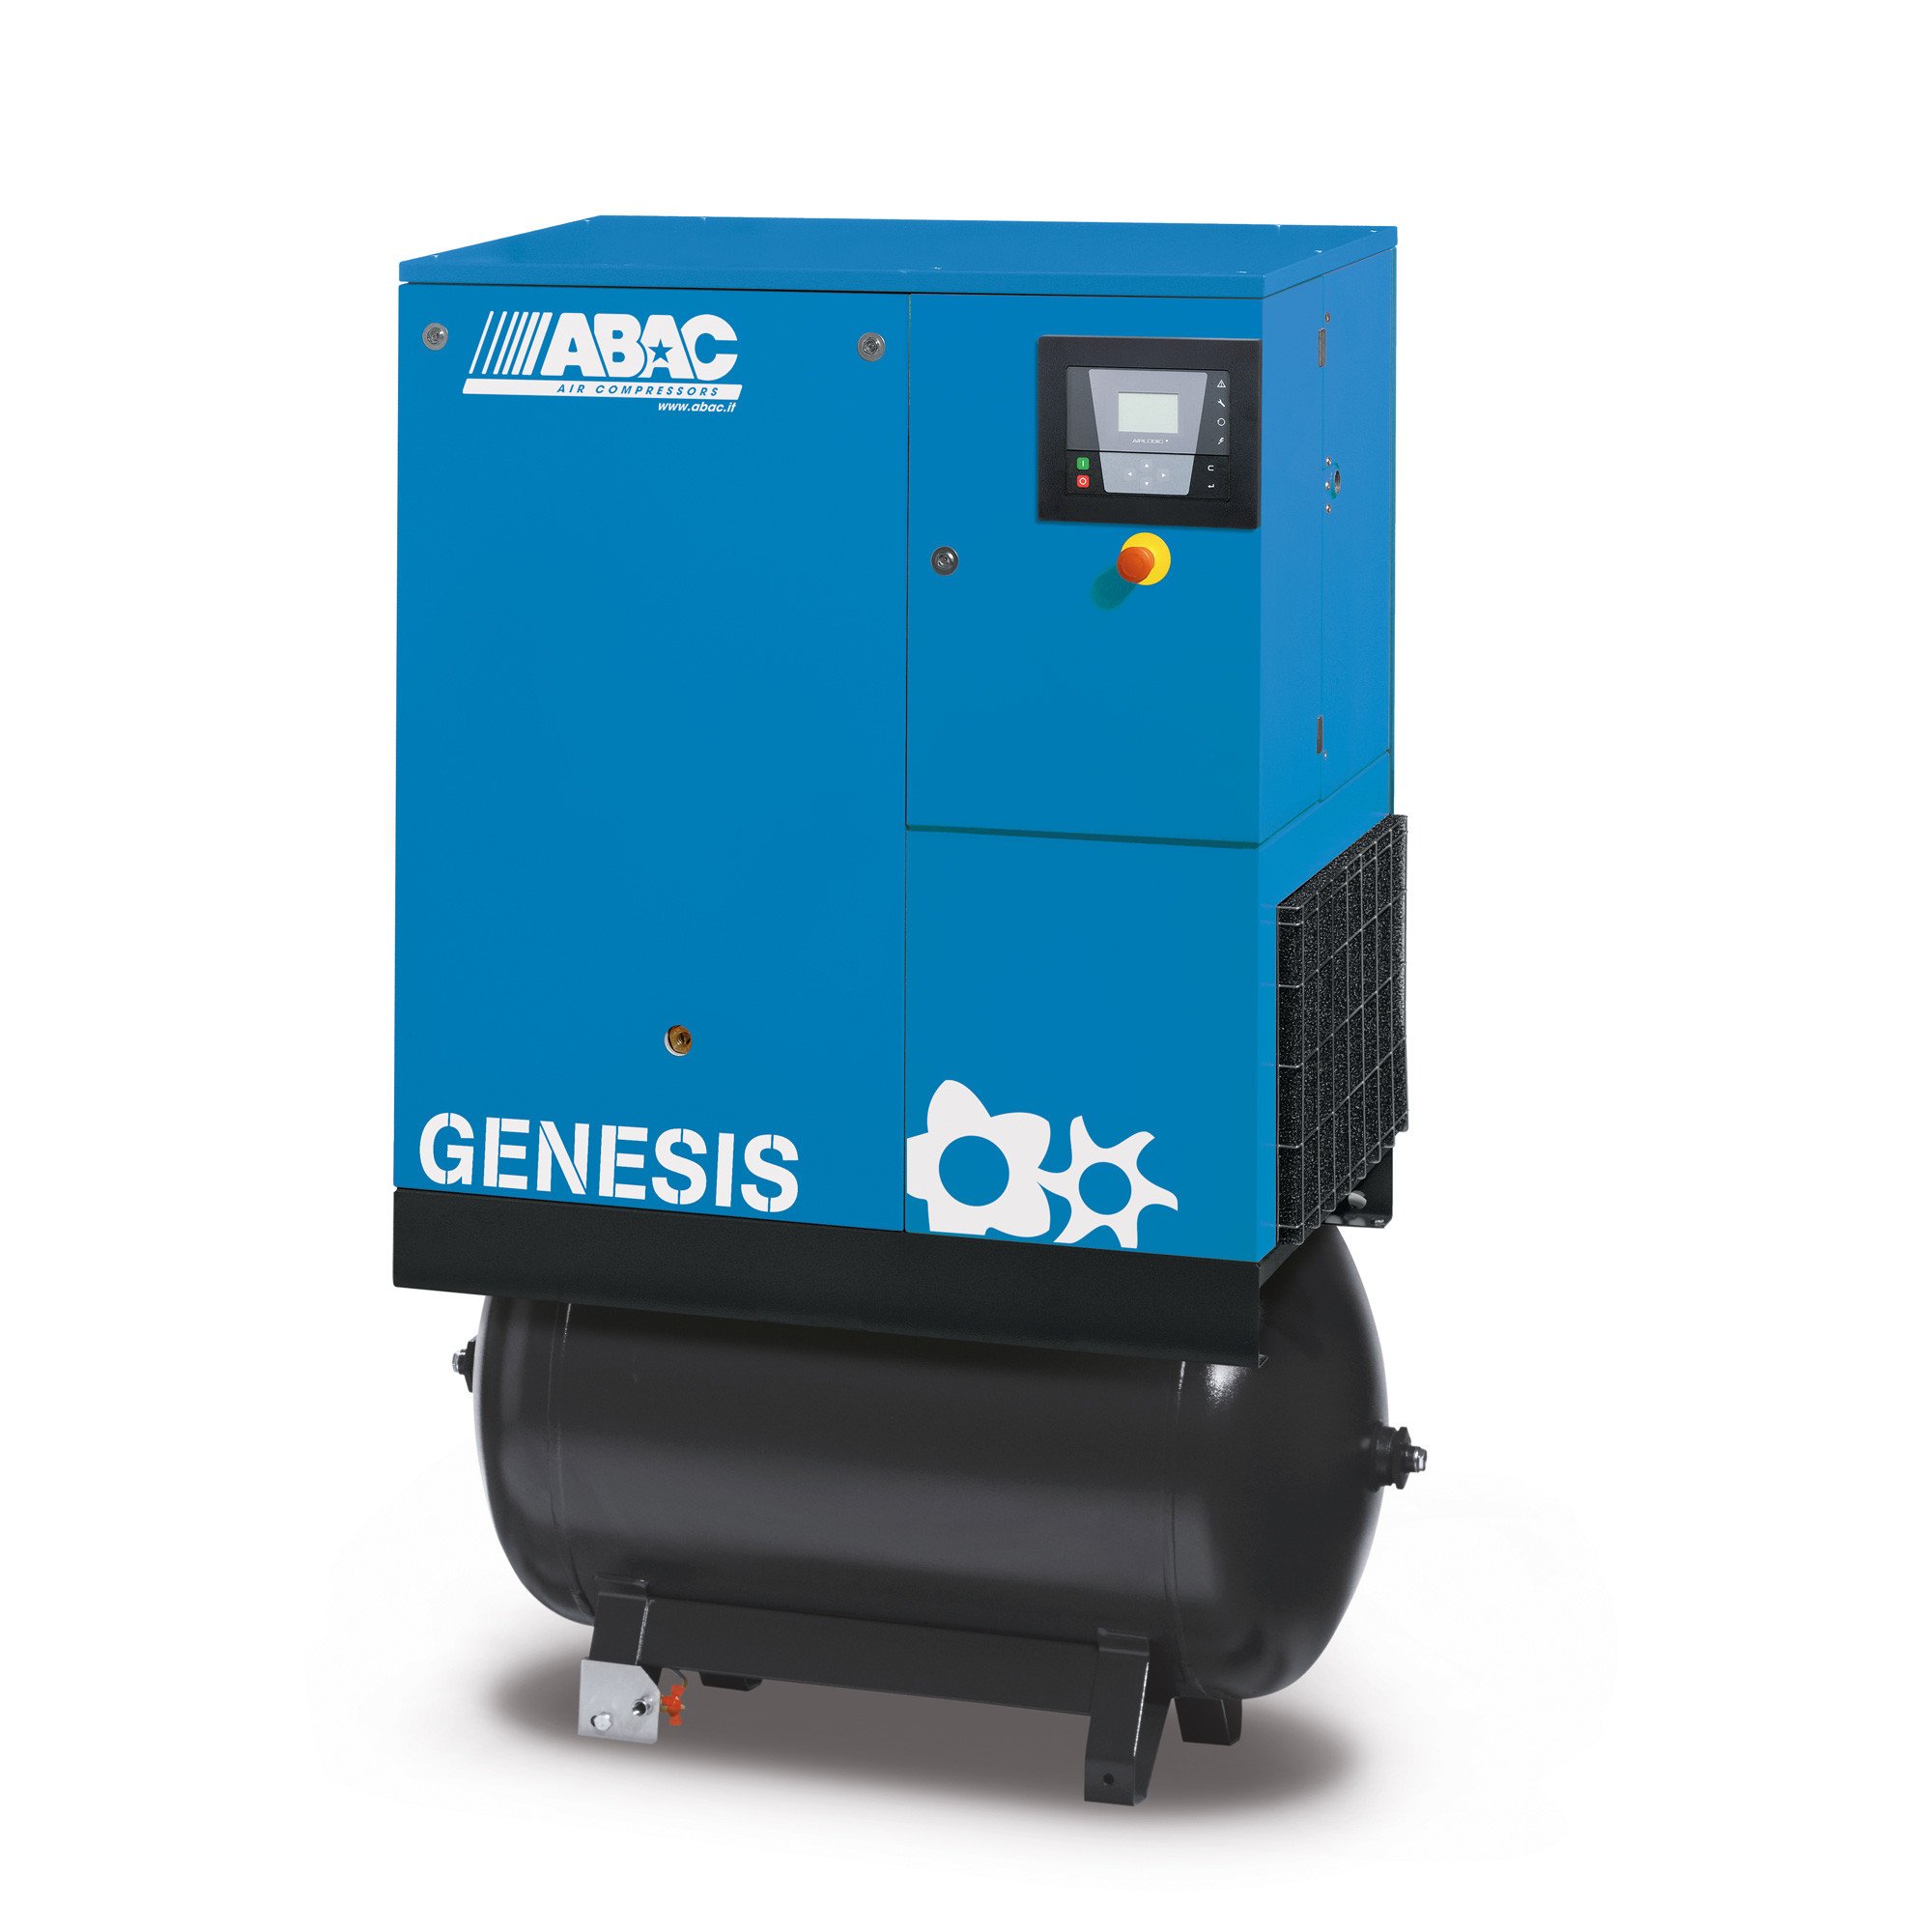 ABAC Genesis 270L, 52.7 CFM, 11 kW定速螺杆空压机